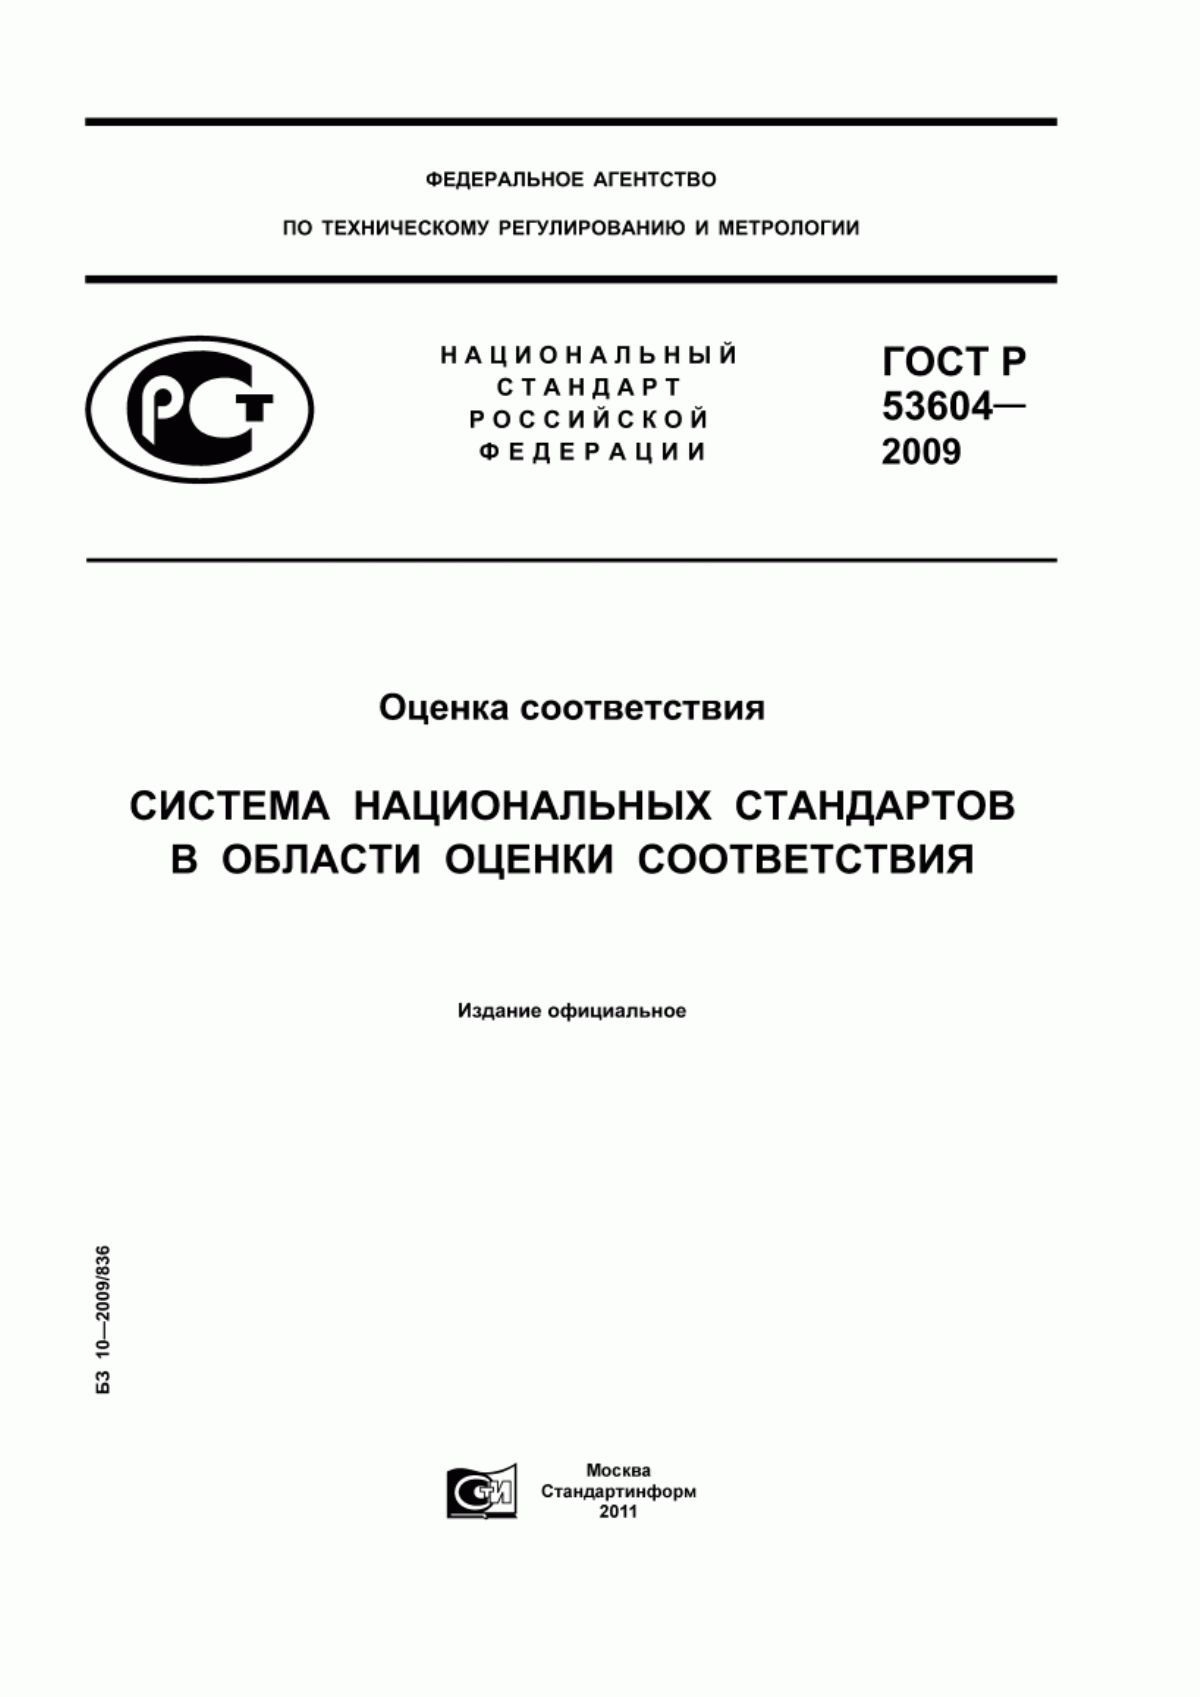 ГОСТ Р 53604-2009 Оценка соответствия. Система национальных стандартов в области оценки соответствия